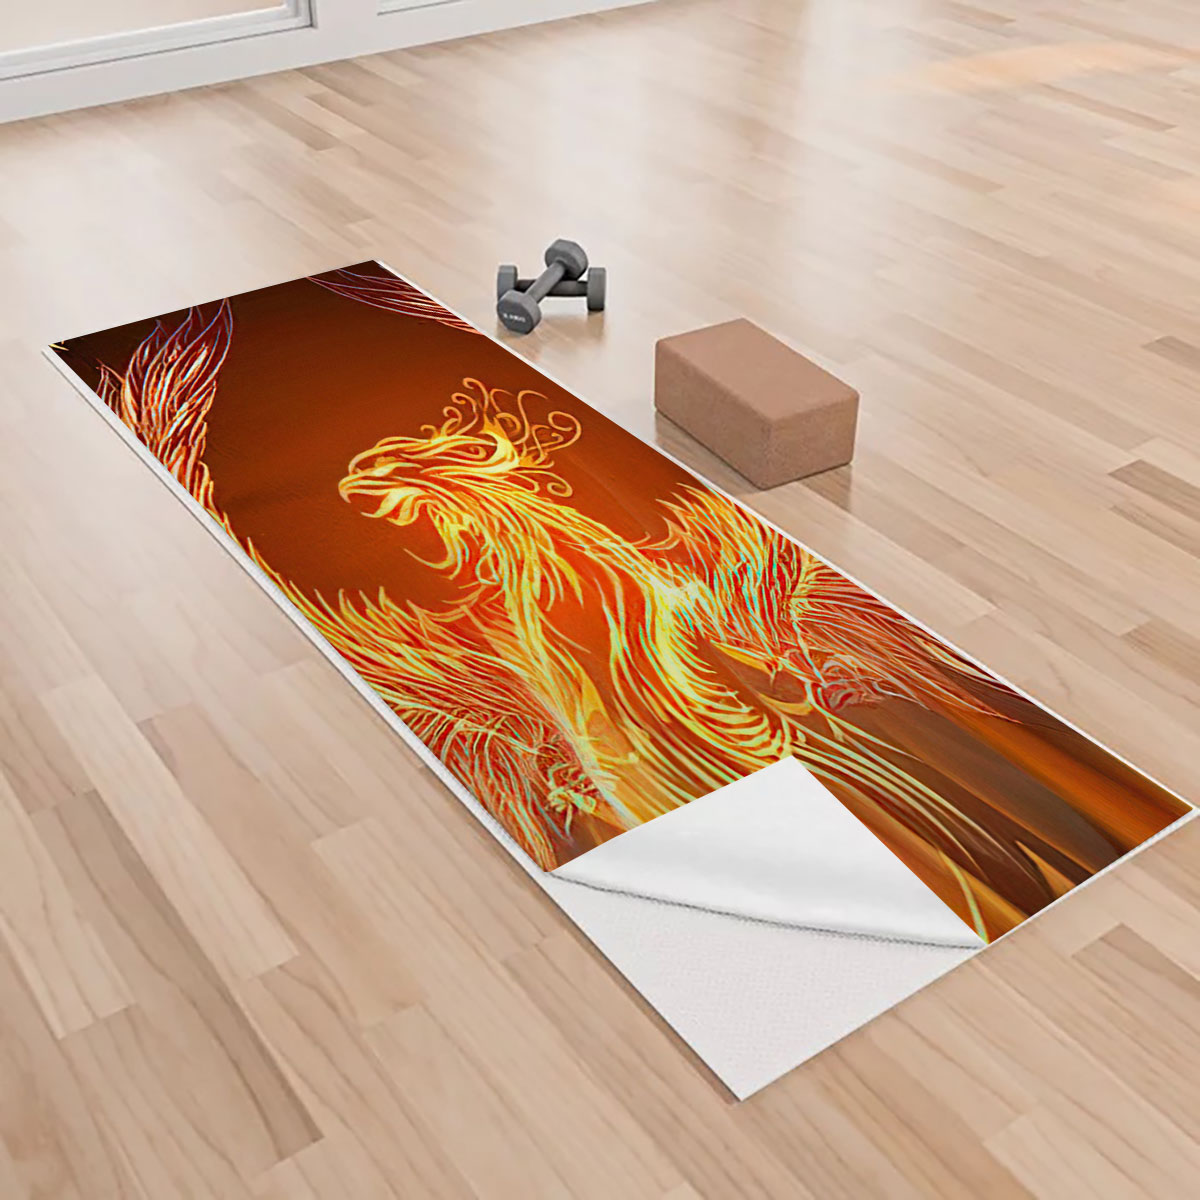 Fire Phoenix Yoga Towels_1_2.1